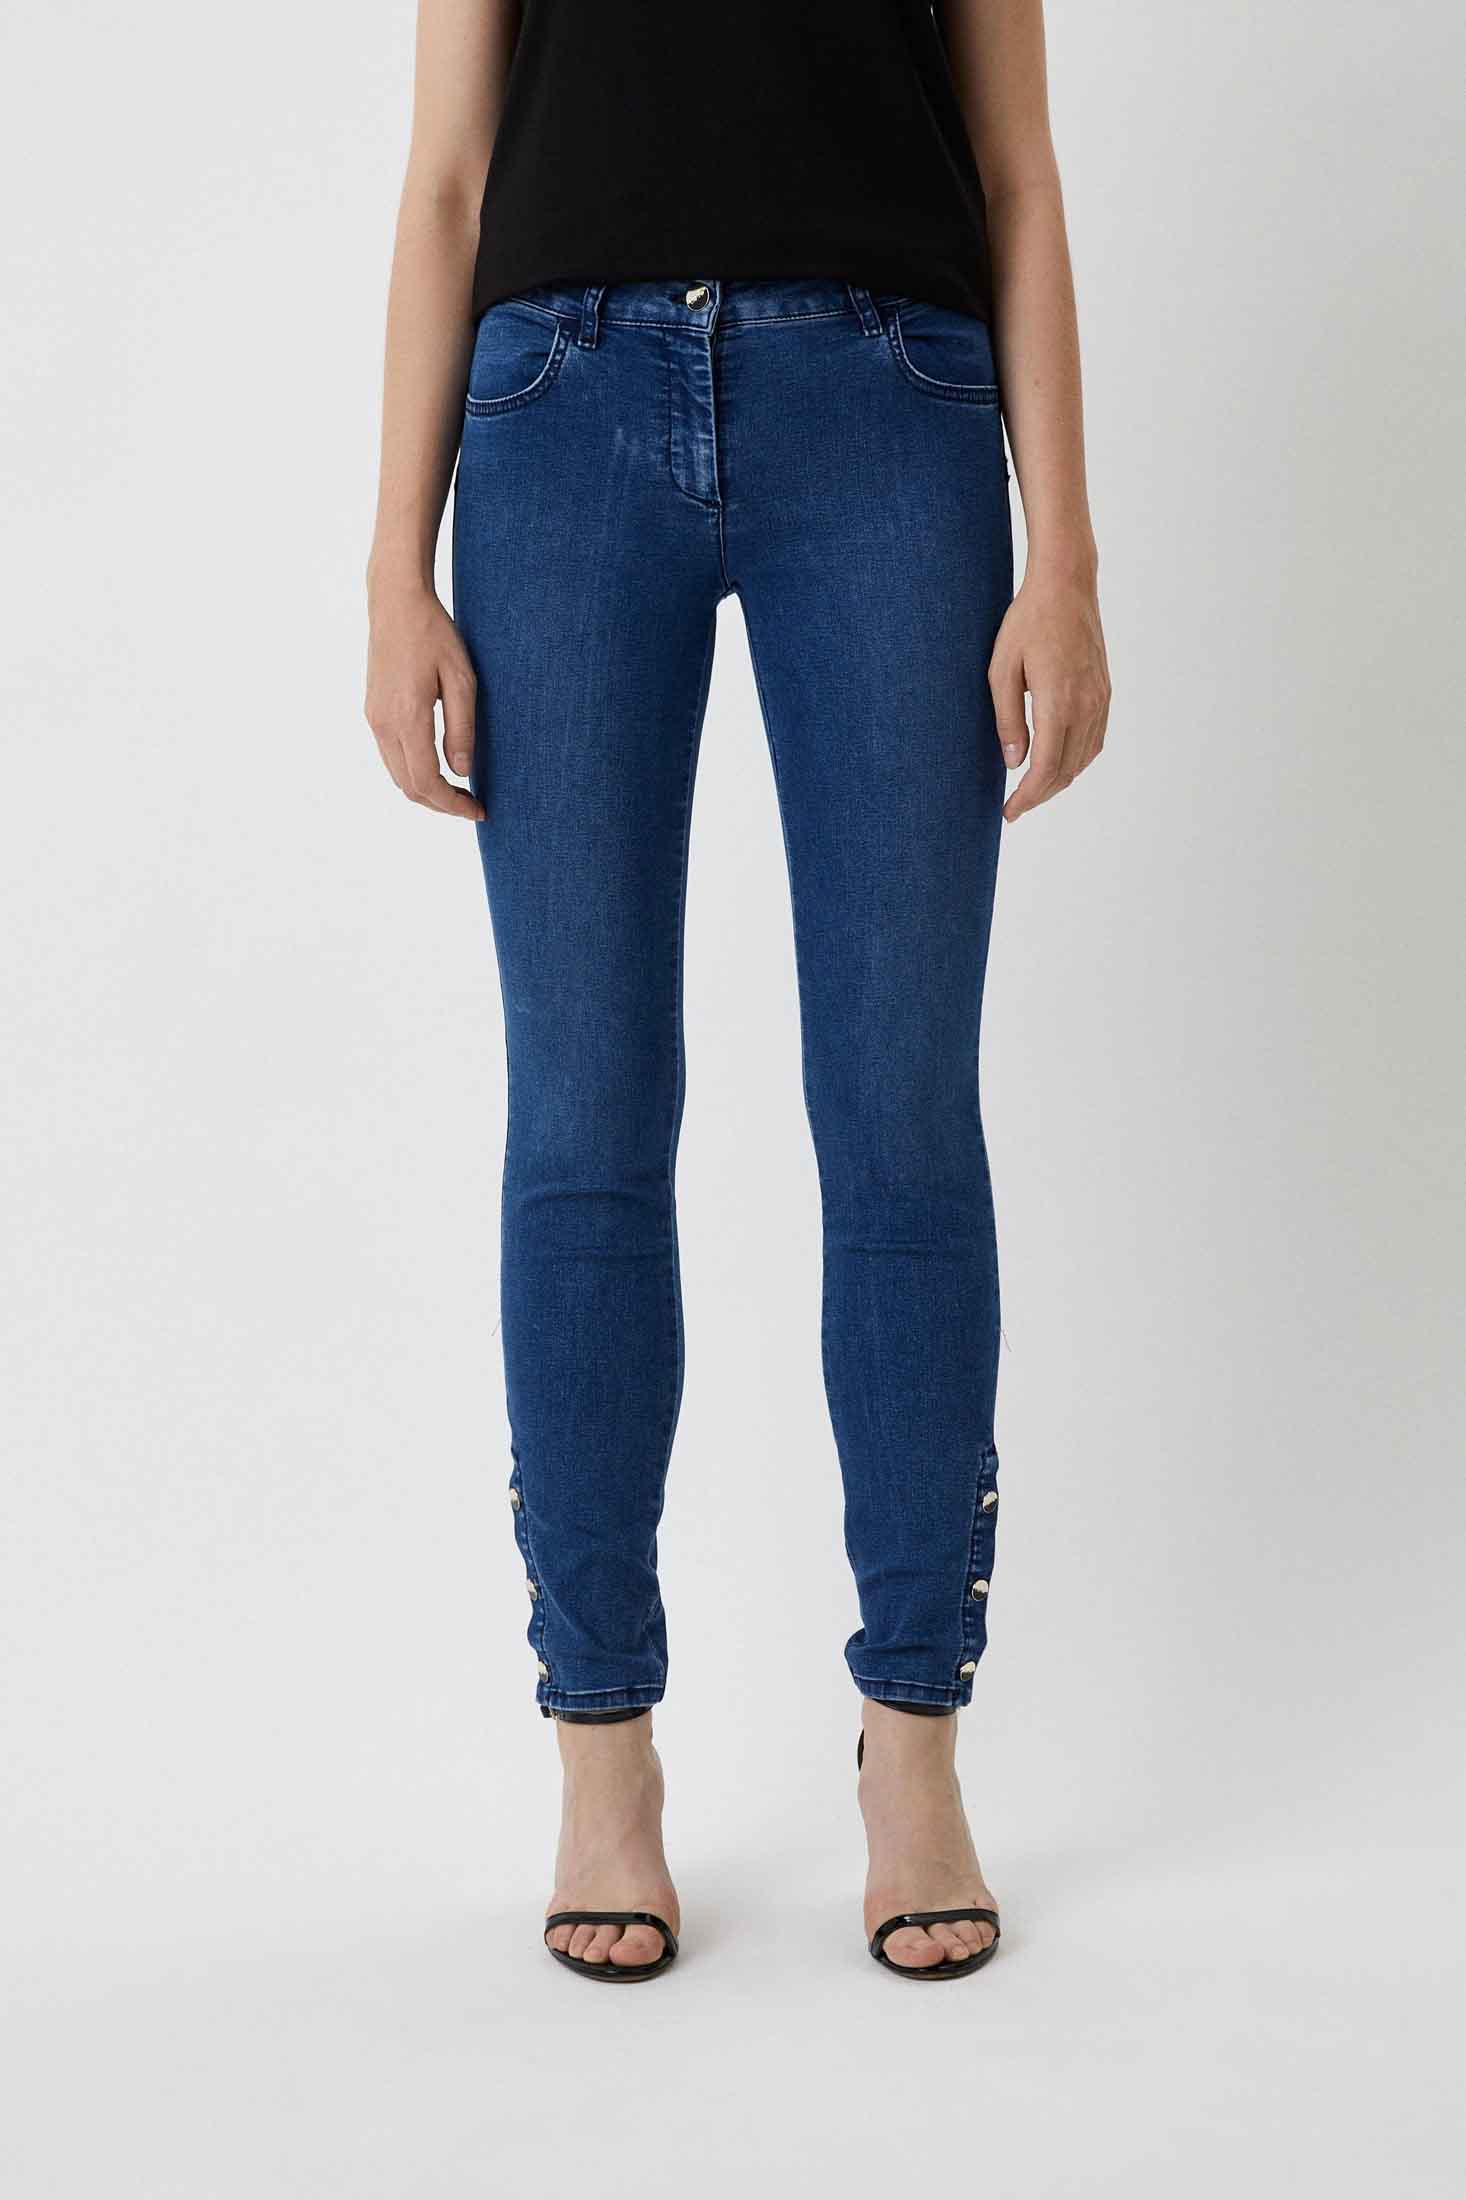 experiencia Pesimista conectar Pantalón de la marca Liu·Jo de color Jeans para mujer